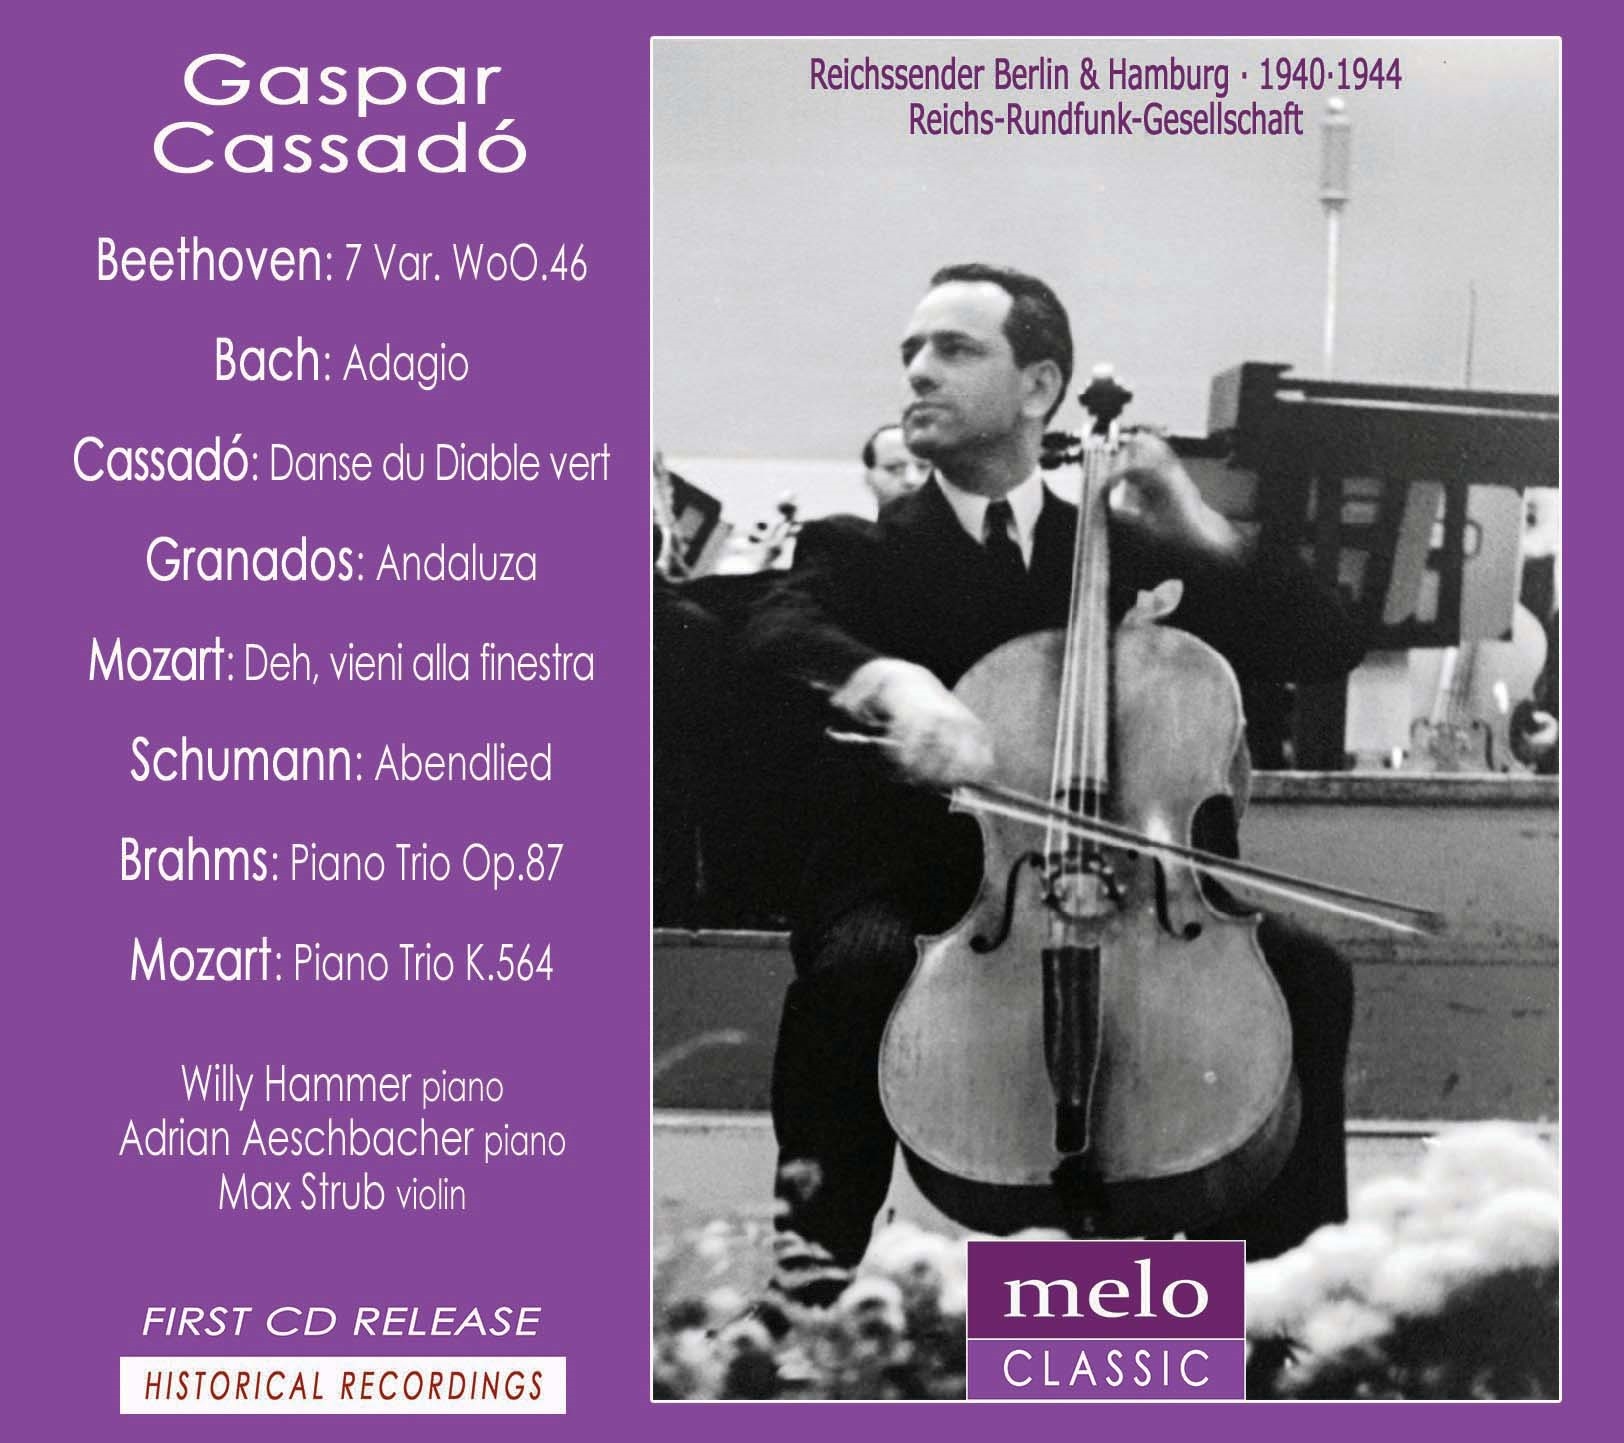 Gaspar Cassado plays Beethoven, Bach, Cassado, Granados, Mozart, Schumann and Brahms